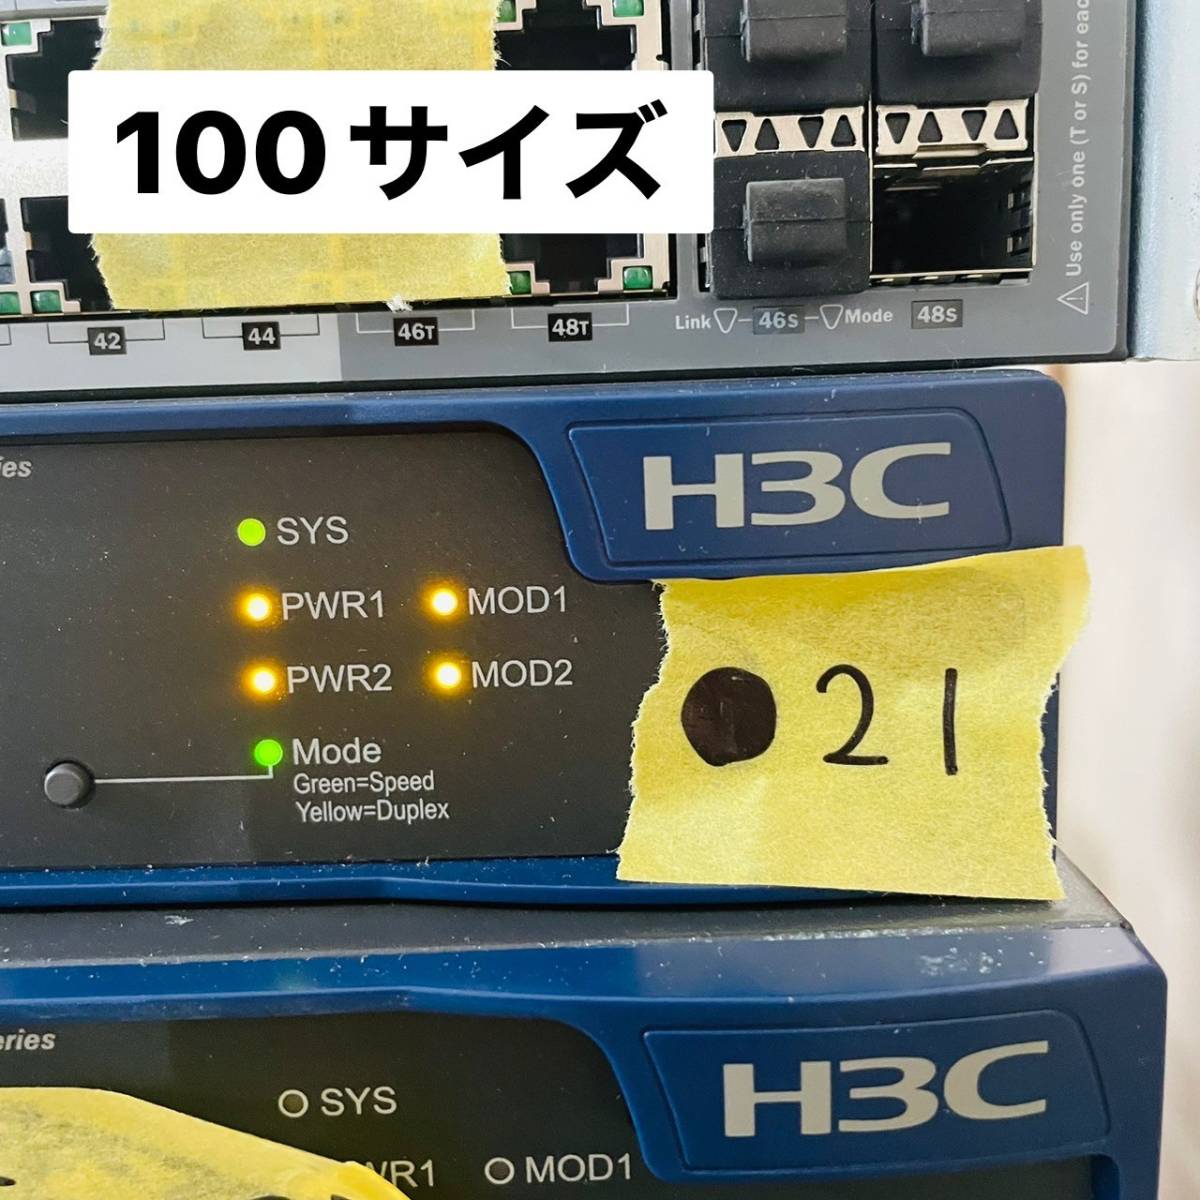 ●21【通電OK】H3C S5500-28F-EI Ethernet switch ネットワーク インターネット 回線 通信機器 機材 拡張 イーサネットハブの画像2